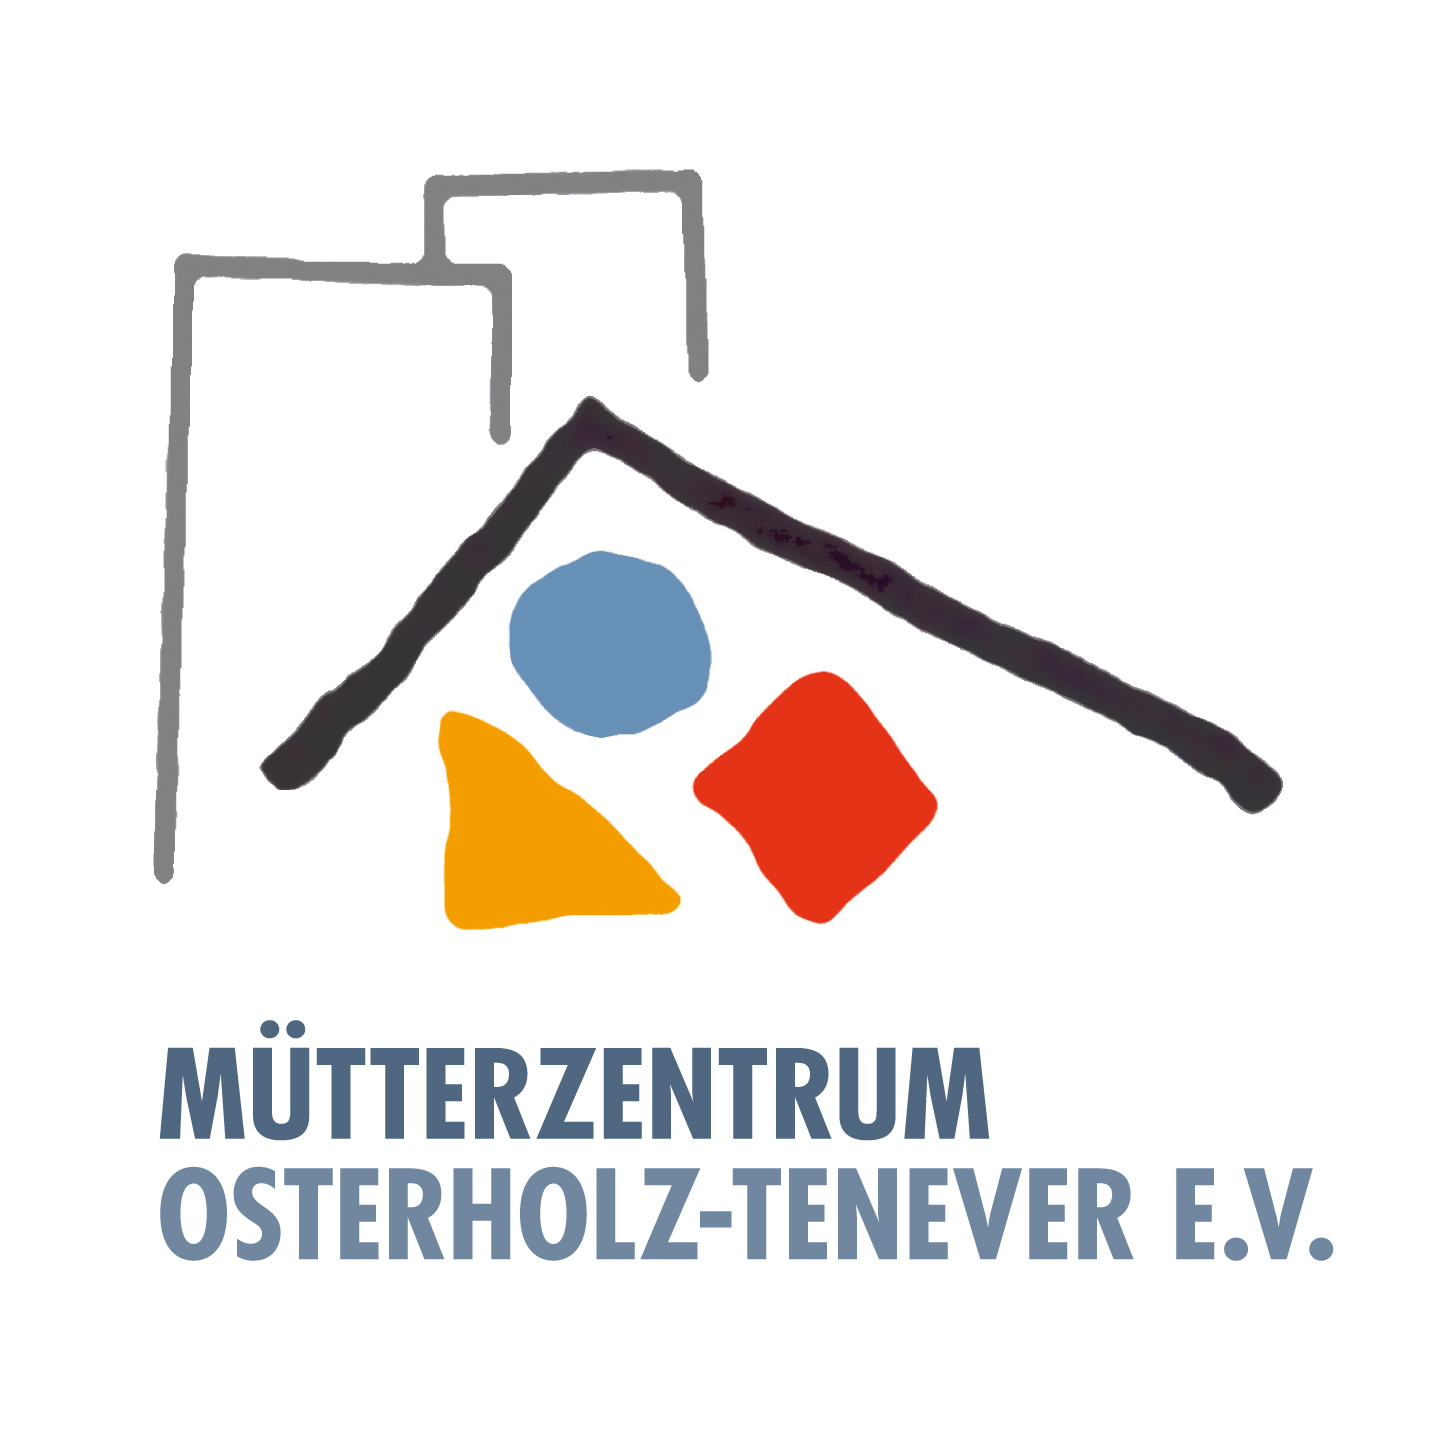 Mütterzentrum Oserholz-Tenever Logo